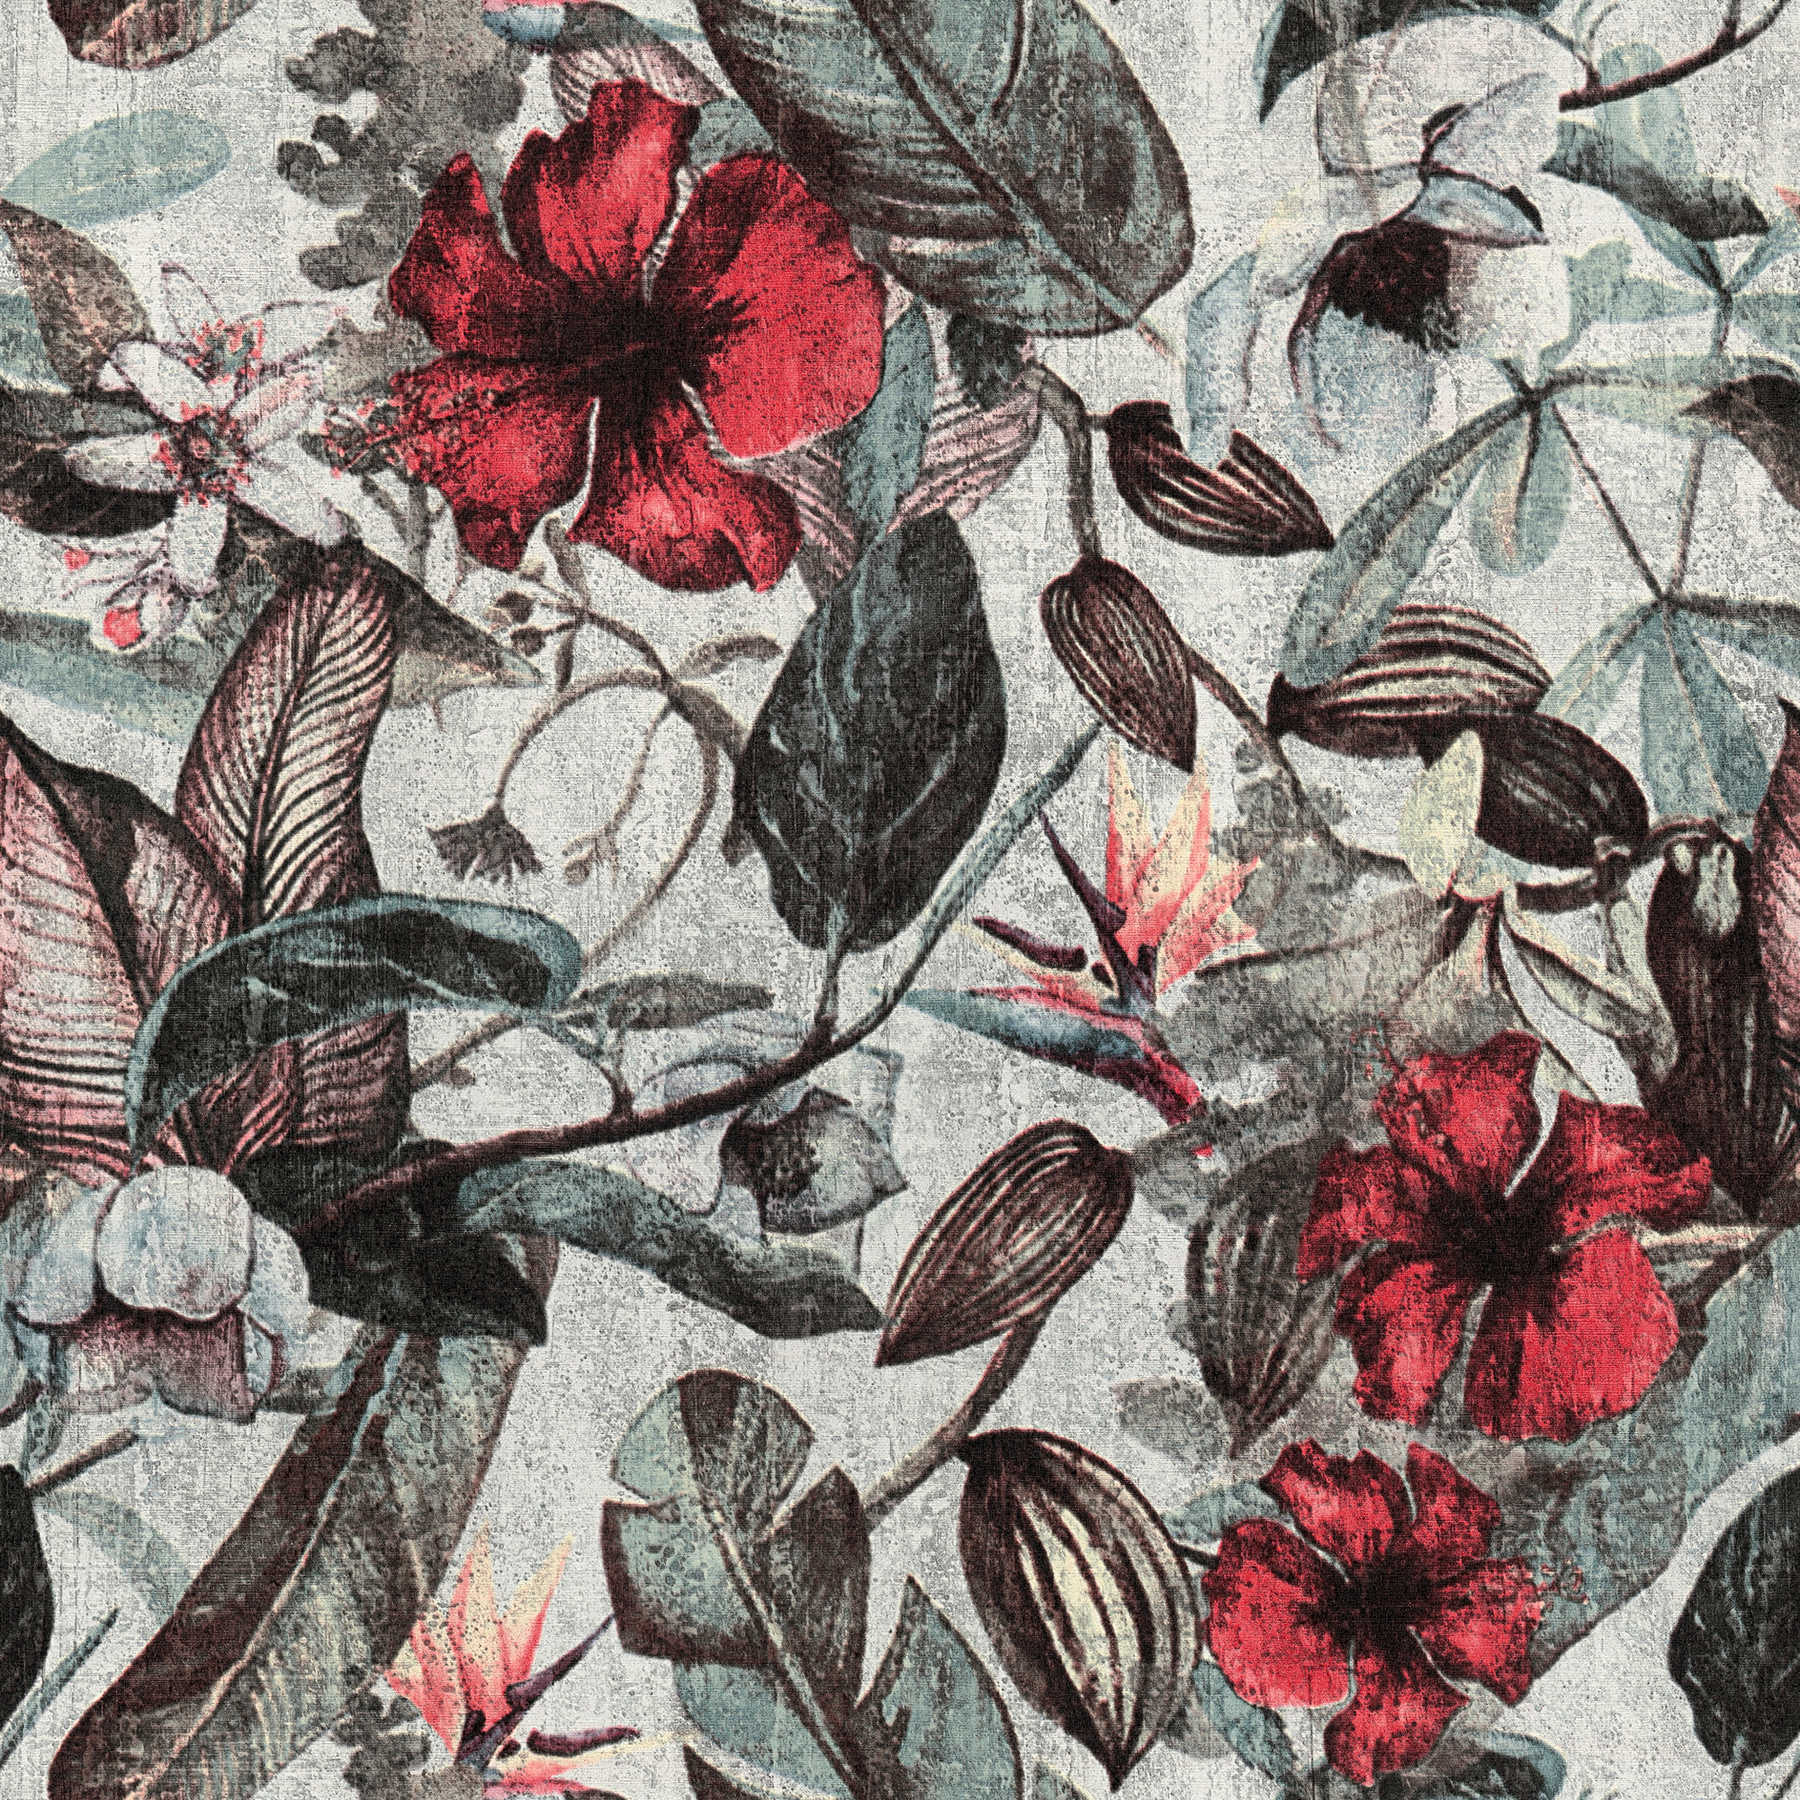             Tapete tropisches Blütenmuster im Textil-Look – Rot, Grün, Gelb
        